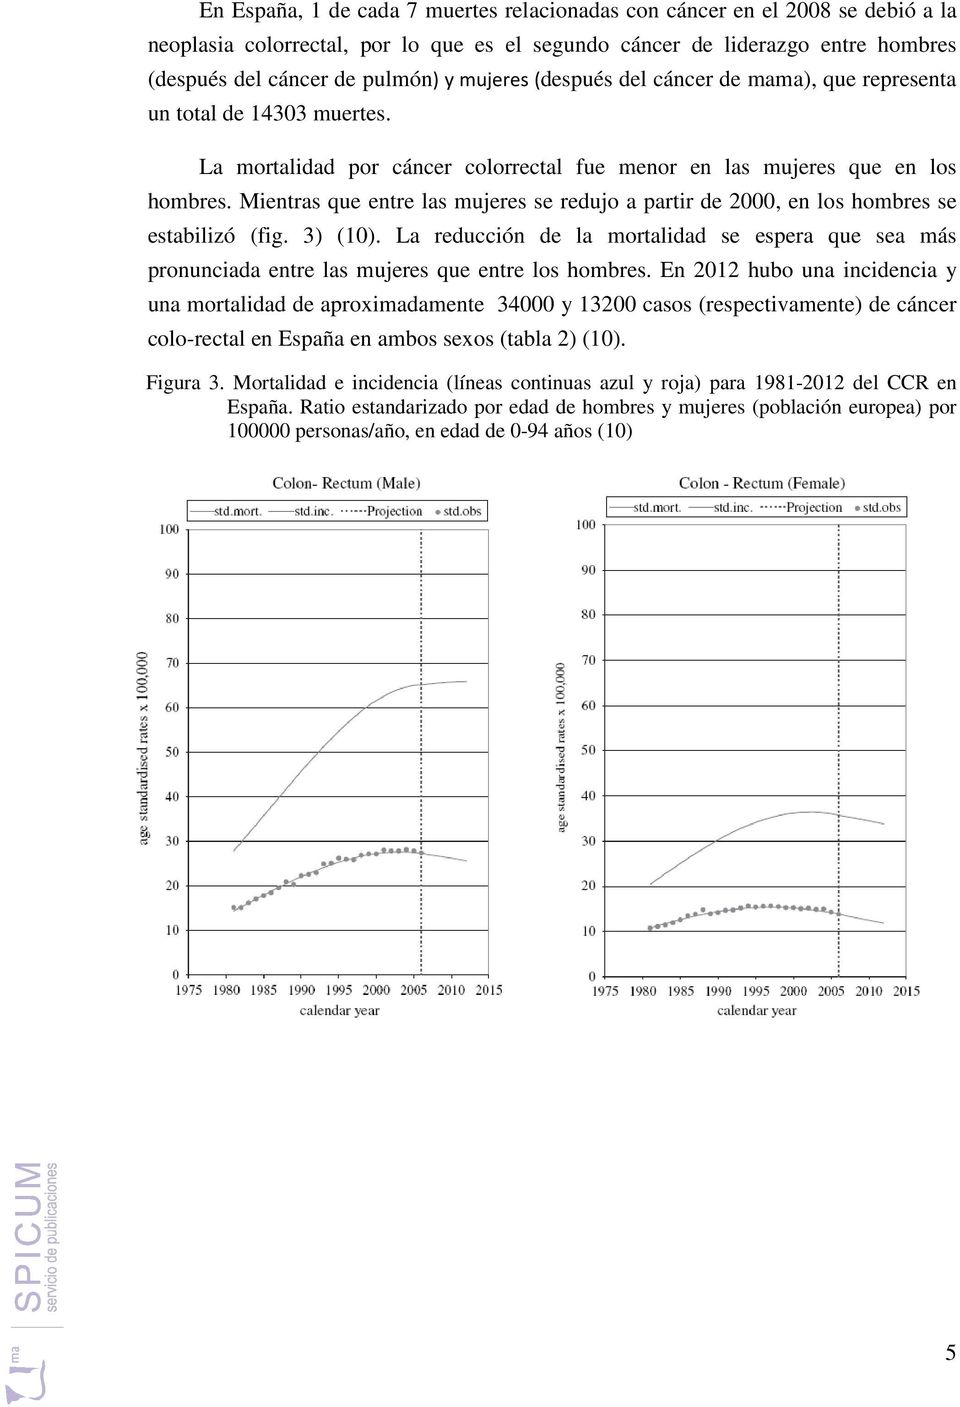 Mientras que entre las mujeres se redujo a partir de 2000,, en los hombres se estabilizó (fig. 3) (10).